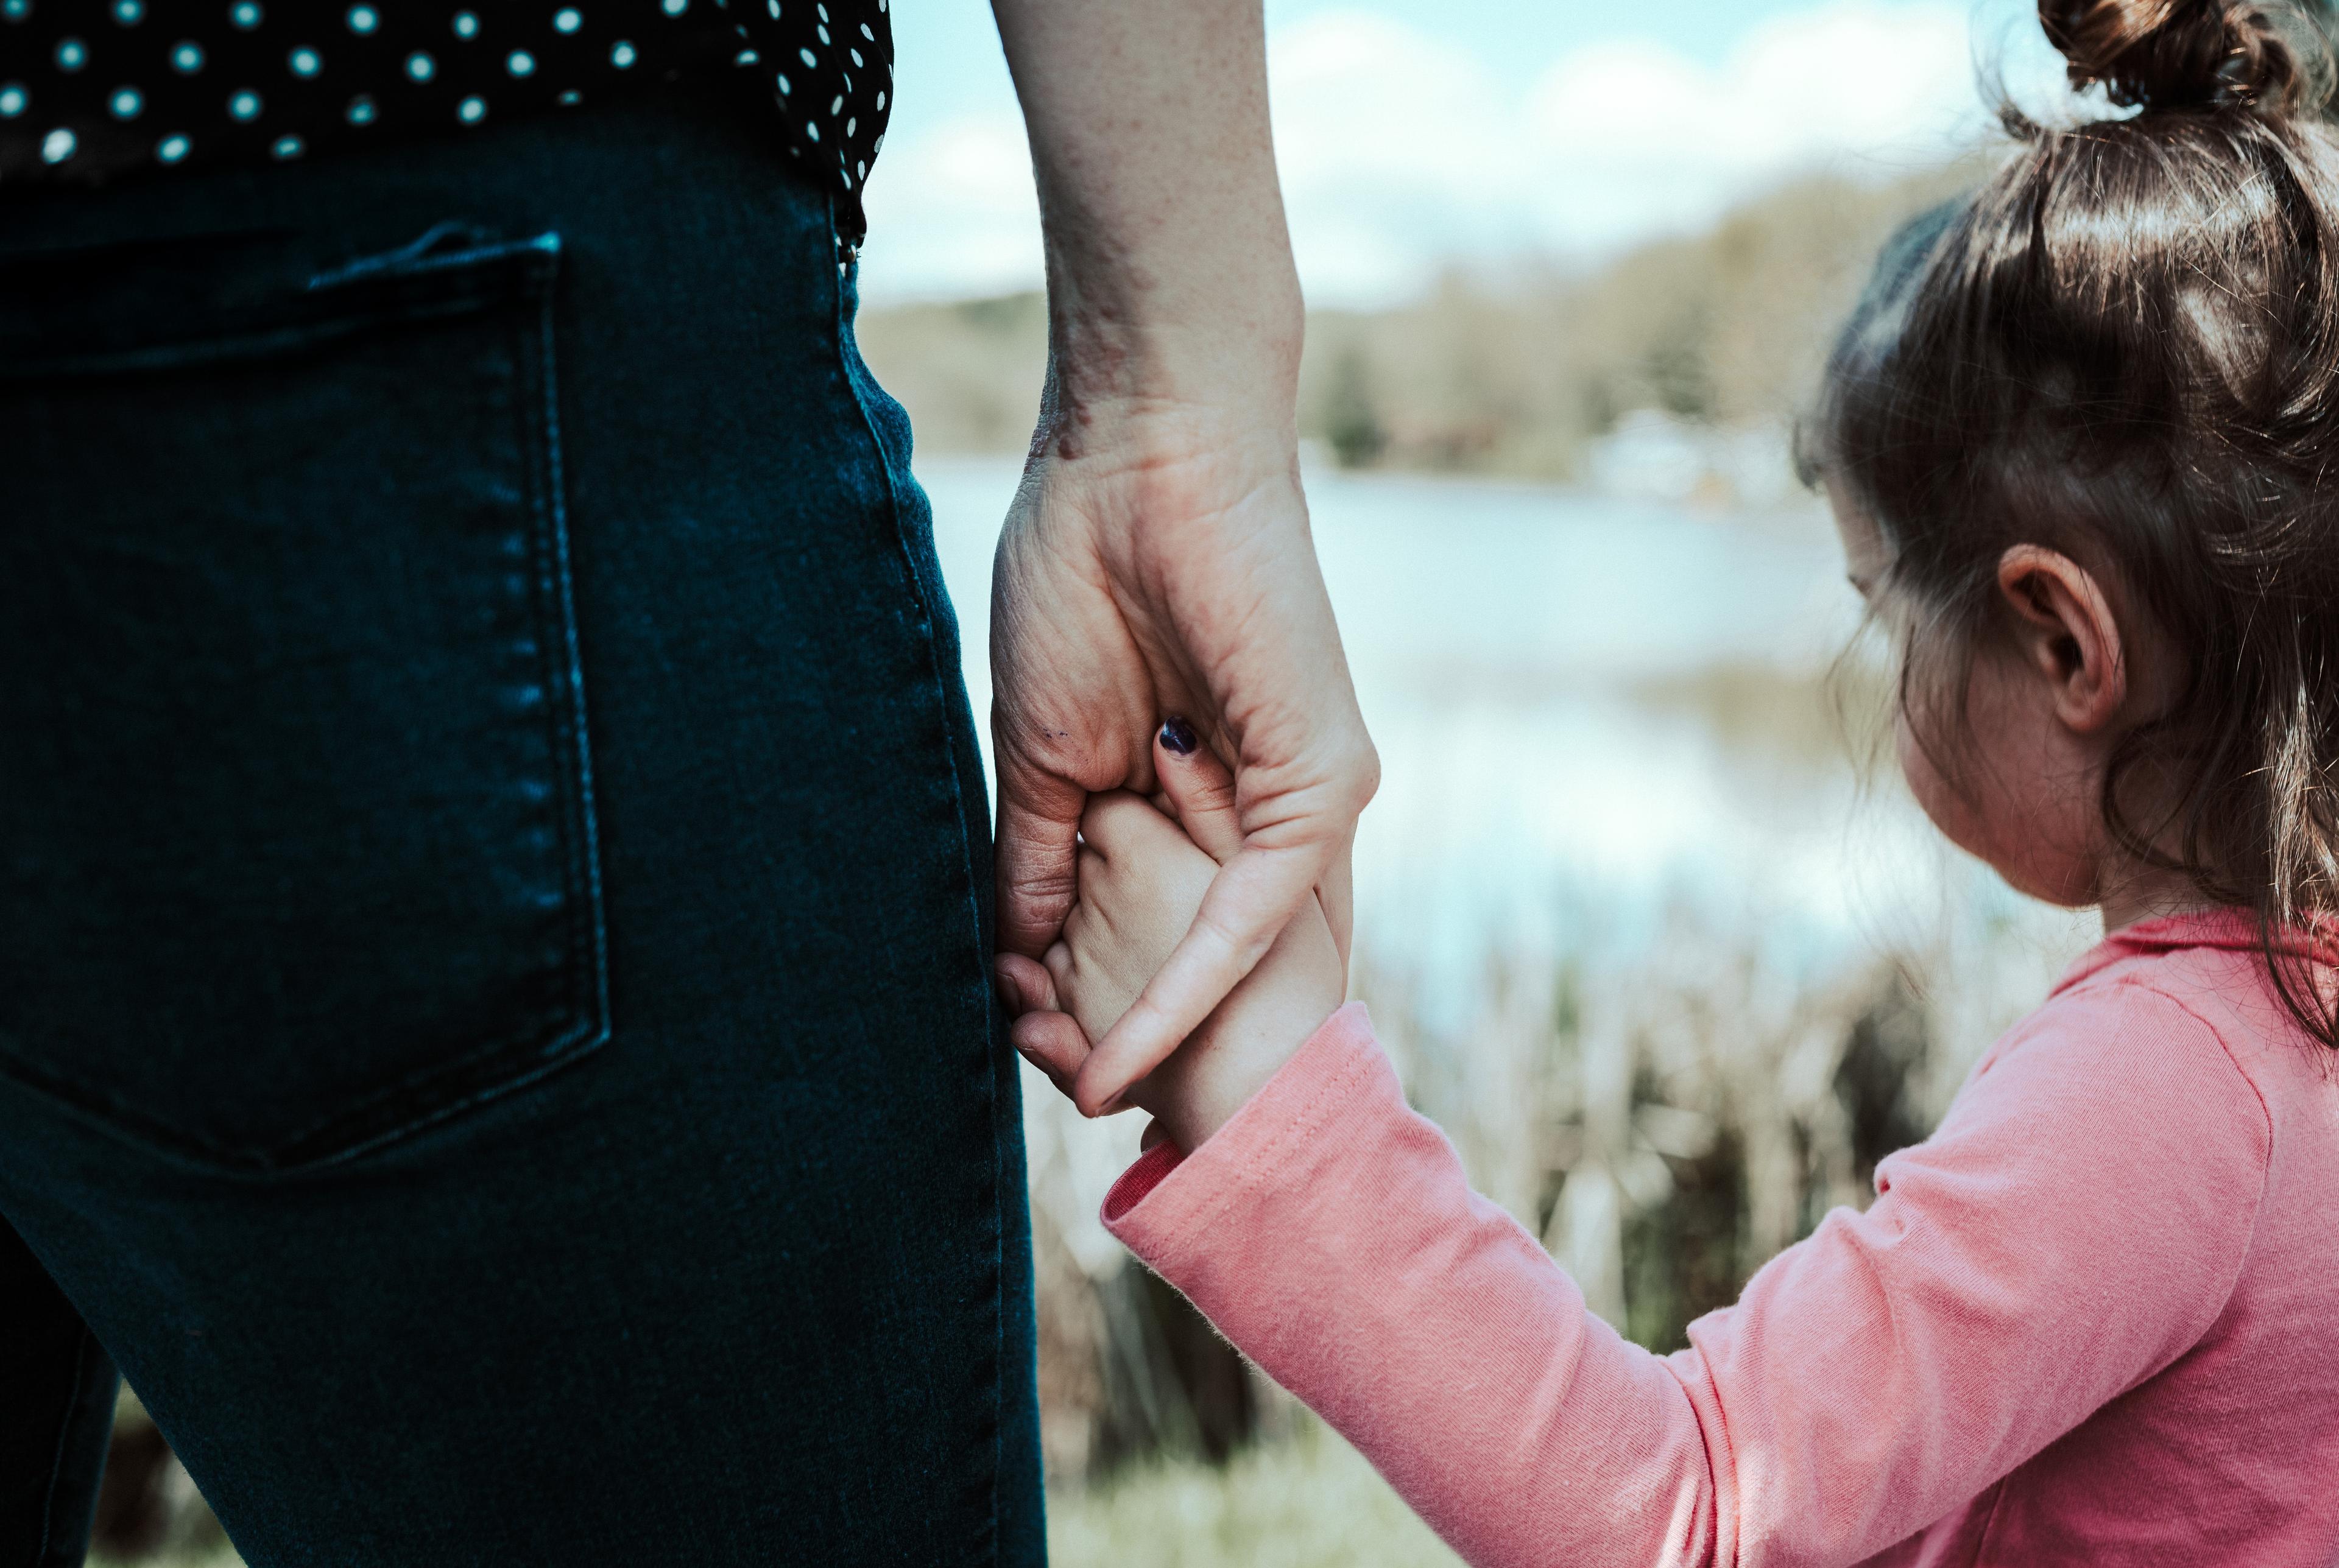 Immagine di una bambina di spalle che stringe la mano alla madre.